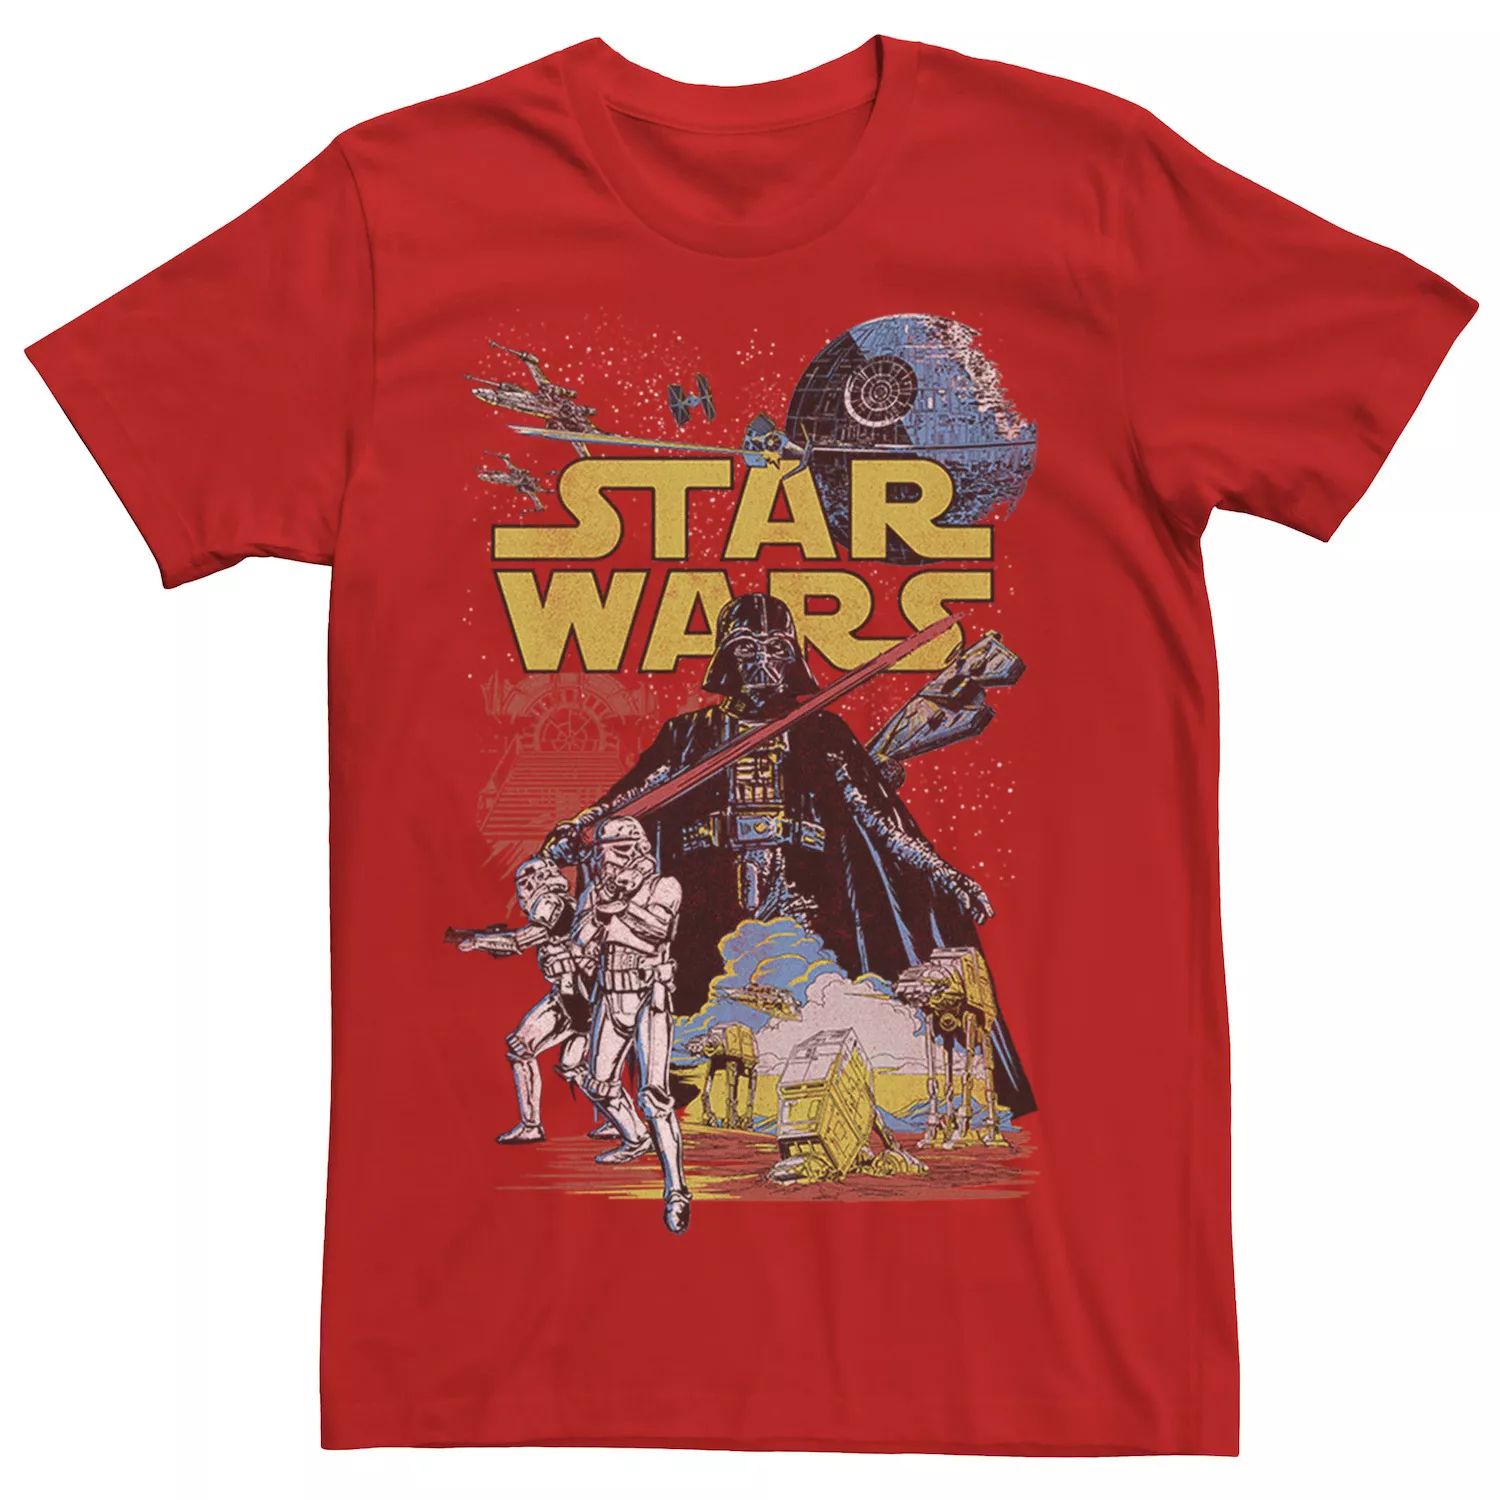 Мужская классическая футболка с графическим плакатом Rebel, Red Star Wars, красный мужская классическая футболка с графическим плакатом rebel star wars светло синий